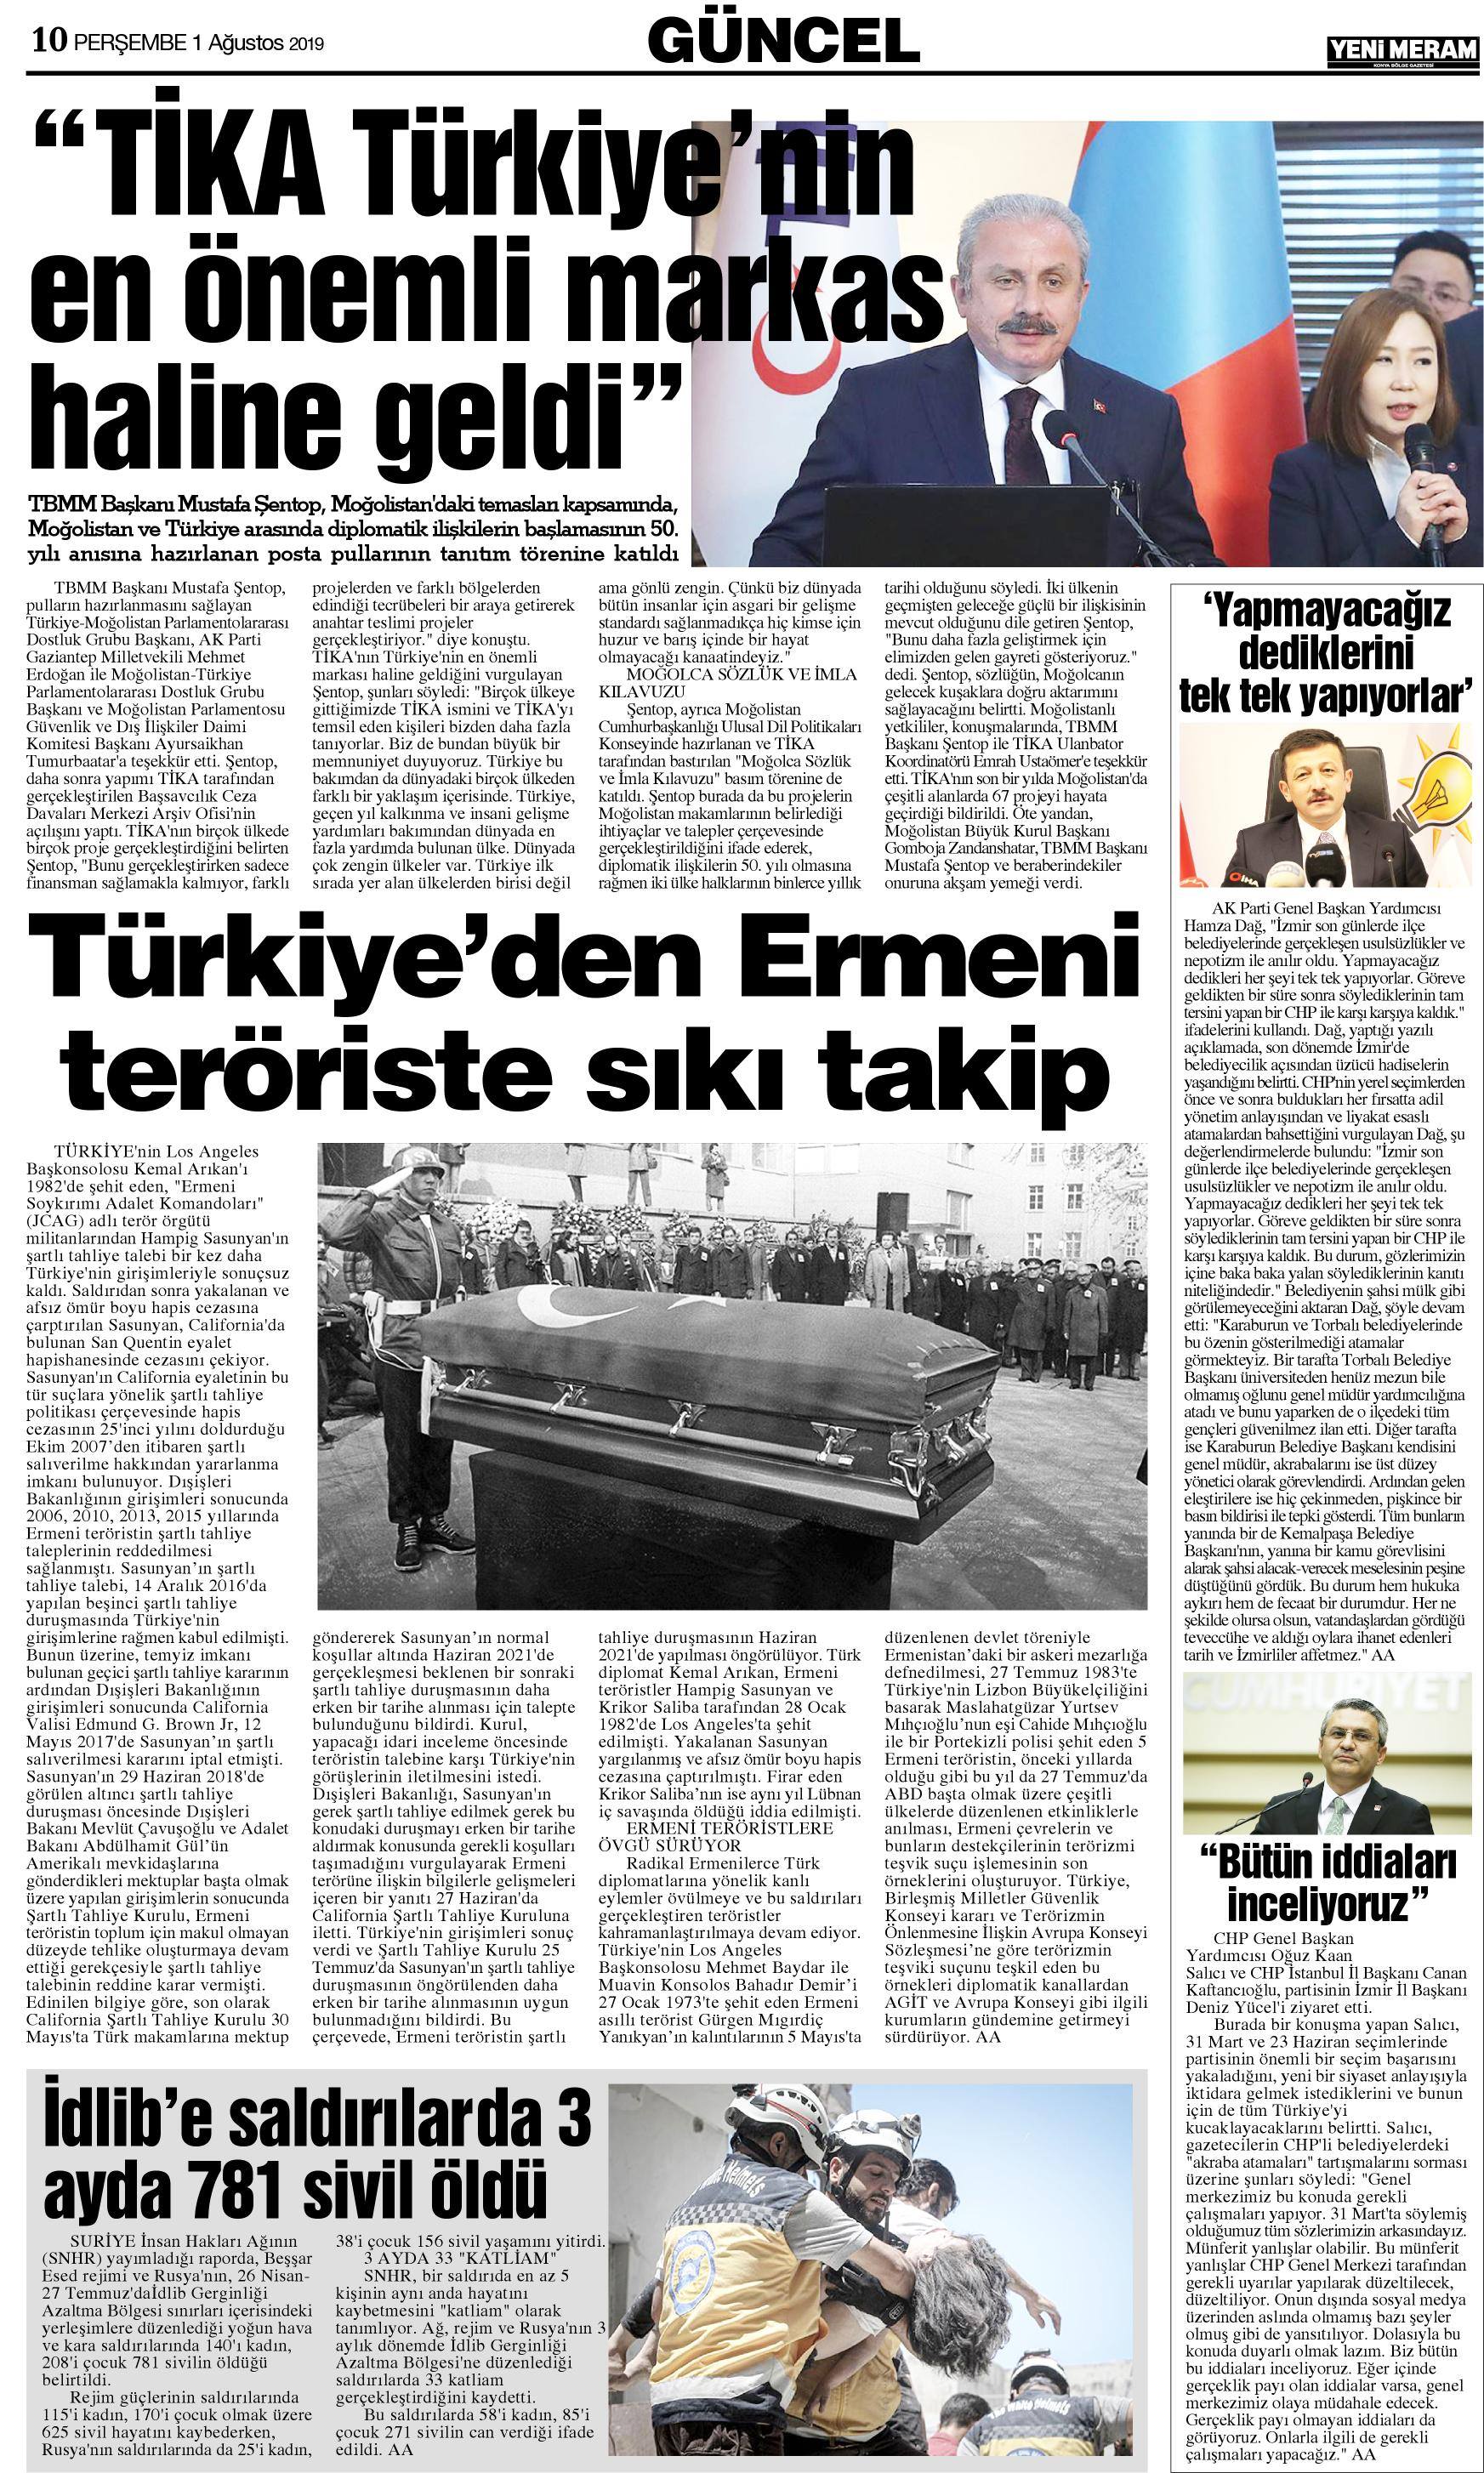 1 Ağustos 2019 Yeni Meram Gazetesi